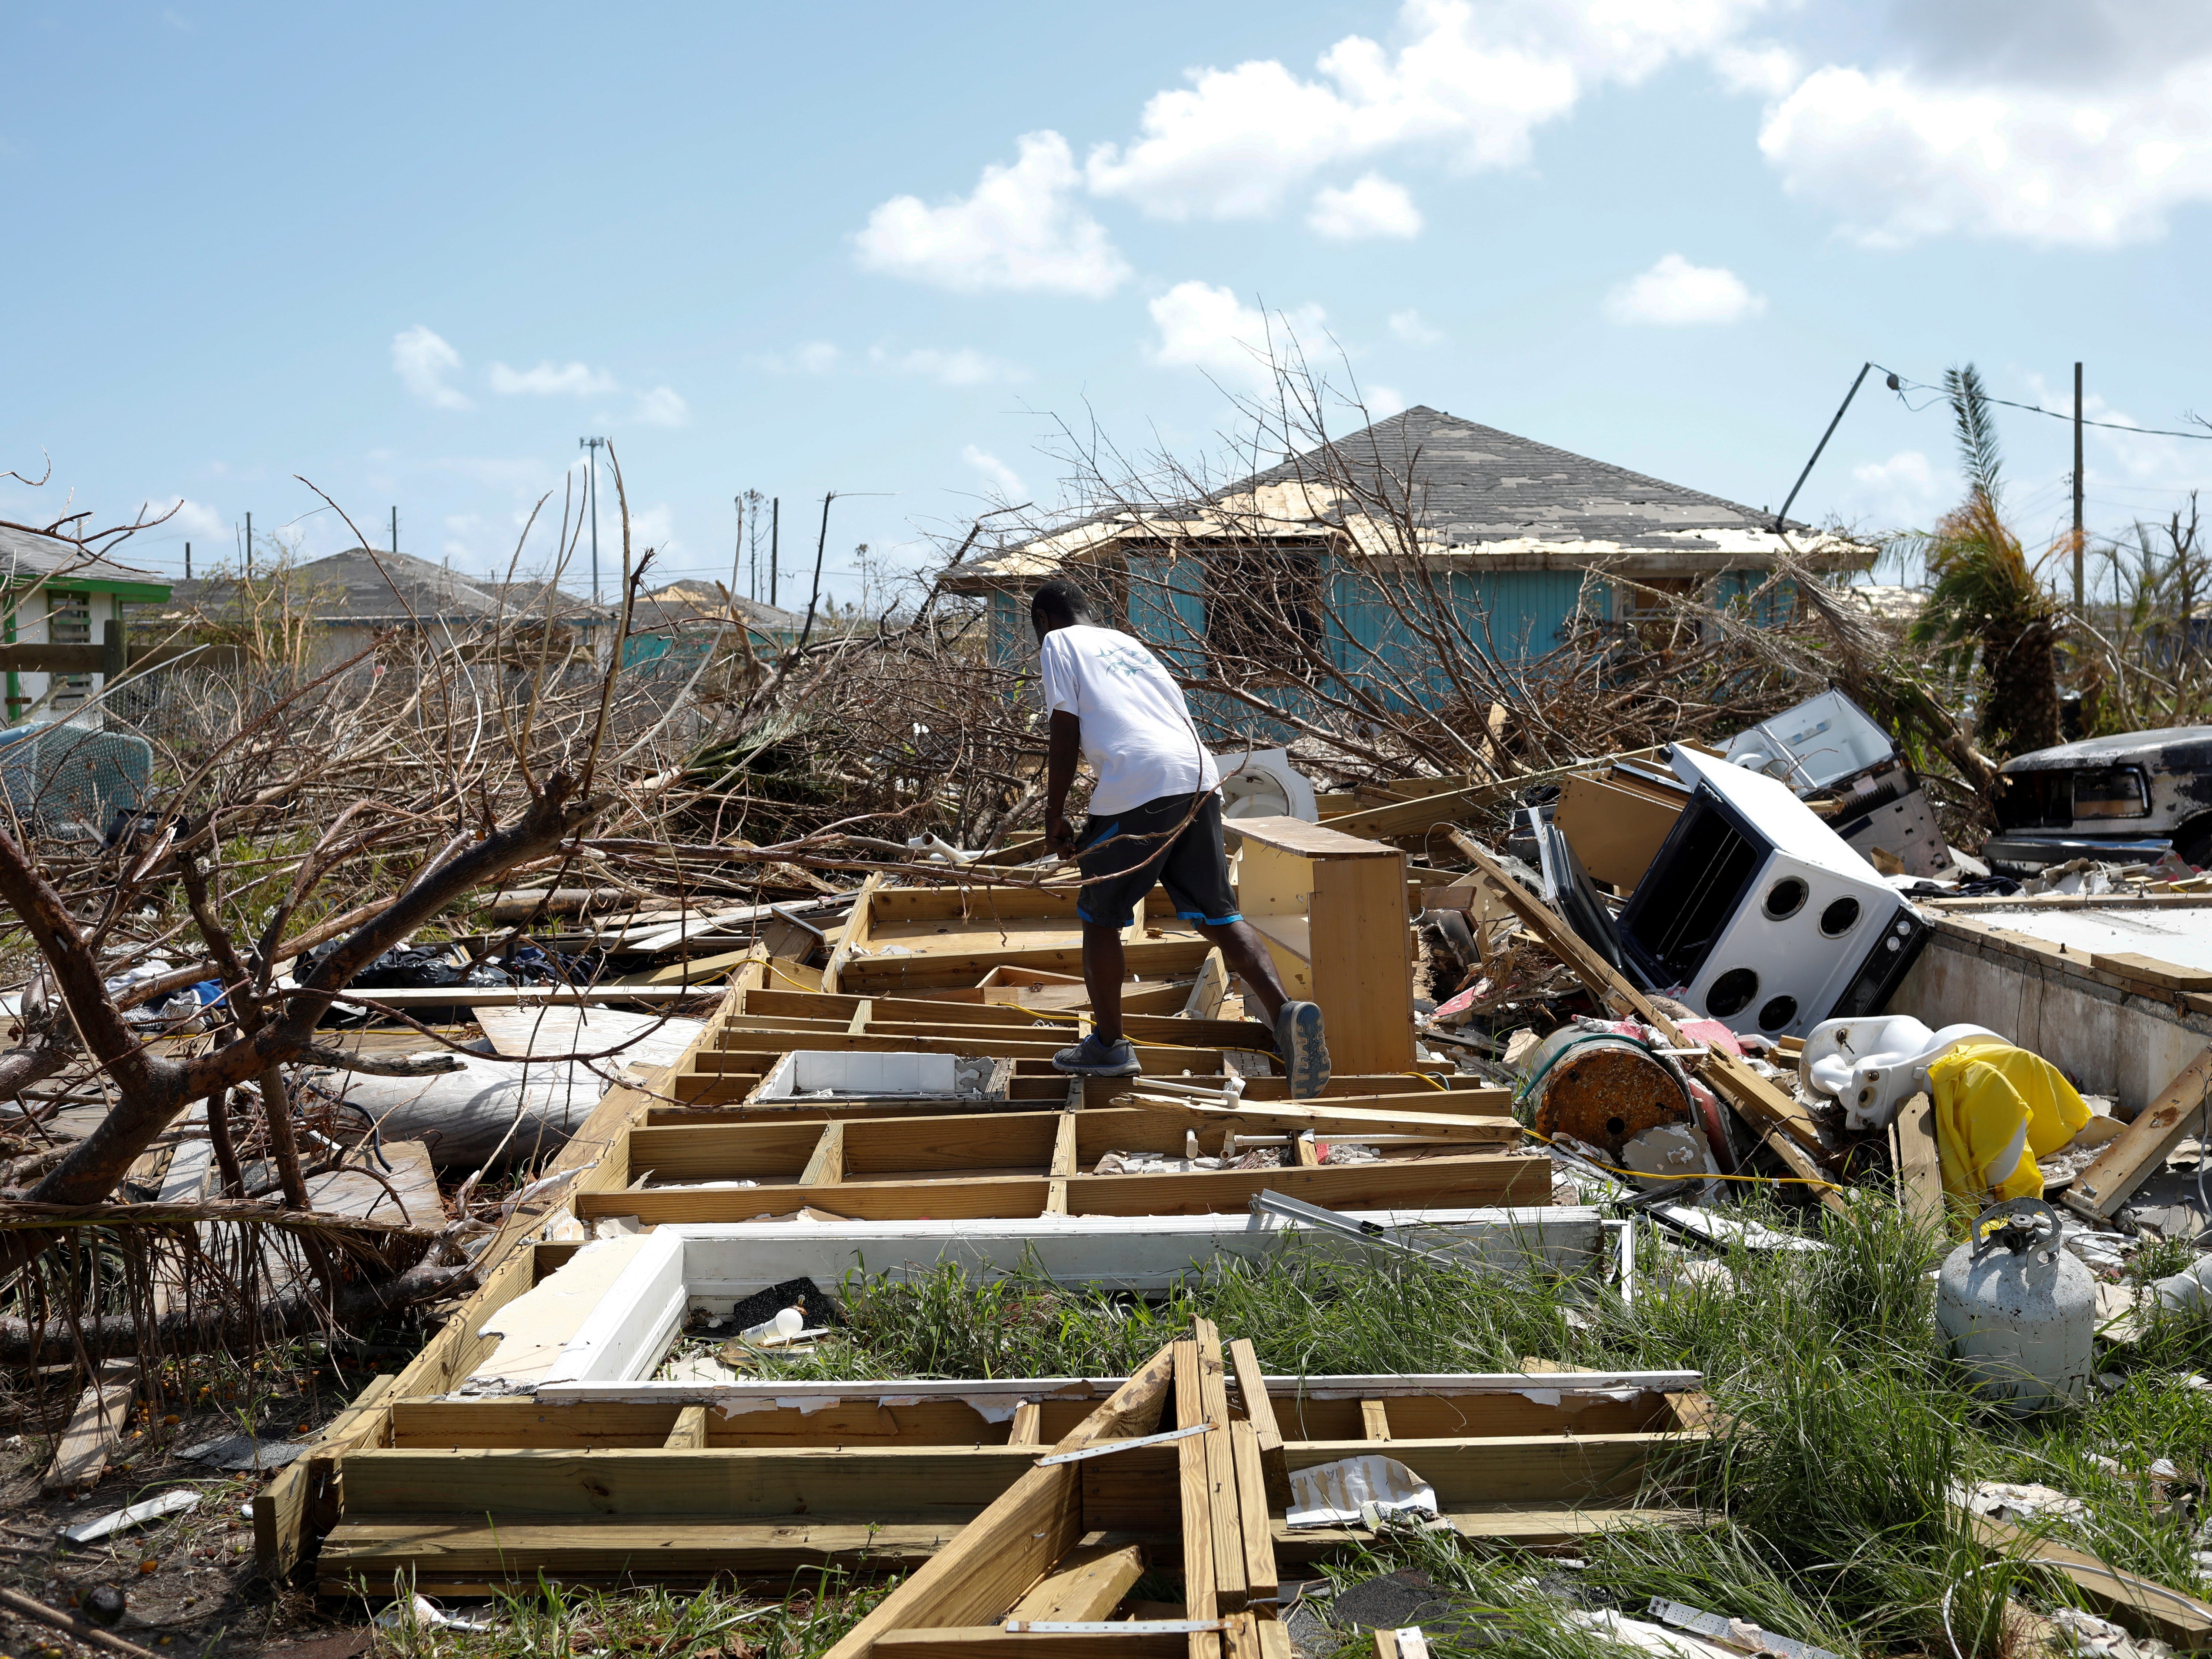 DATEIFOTO: Ein Mann geht zwischen den Trümmern seines Hauses spazieren, nachdem der Hurrikan Dorian am 11. September 2019 die Abaco-Inseln in Spring City, Bahamas, getroffen hat. REUTERS/Marco Bello – RC1D219815D0/Dateifoto